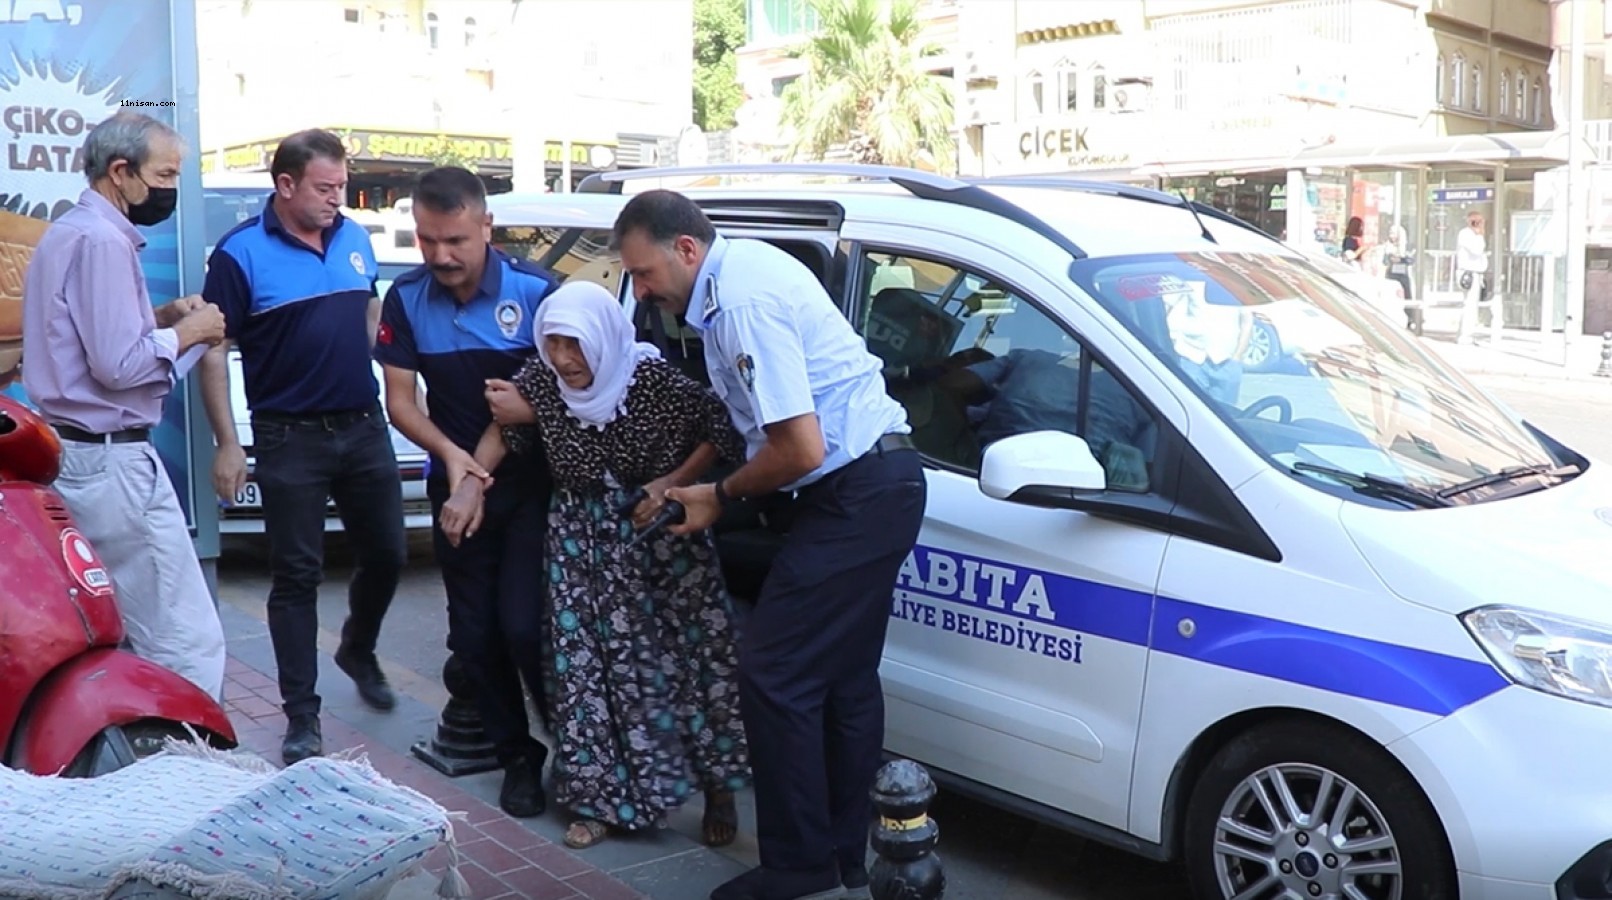 Urfa’da 96 yaşındaki kadının maaş çilesine zabıta koştu!;